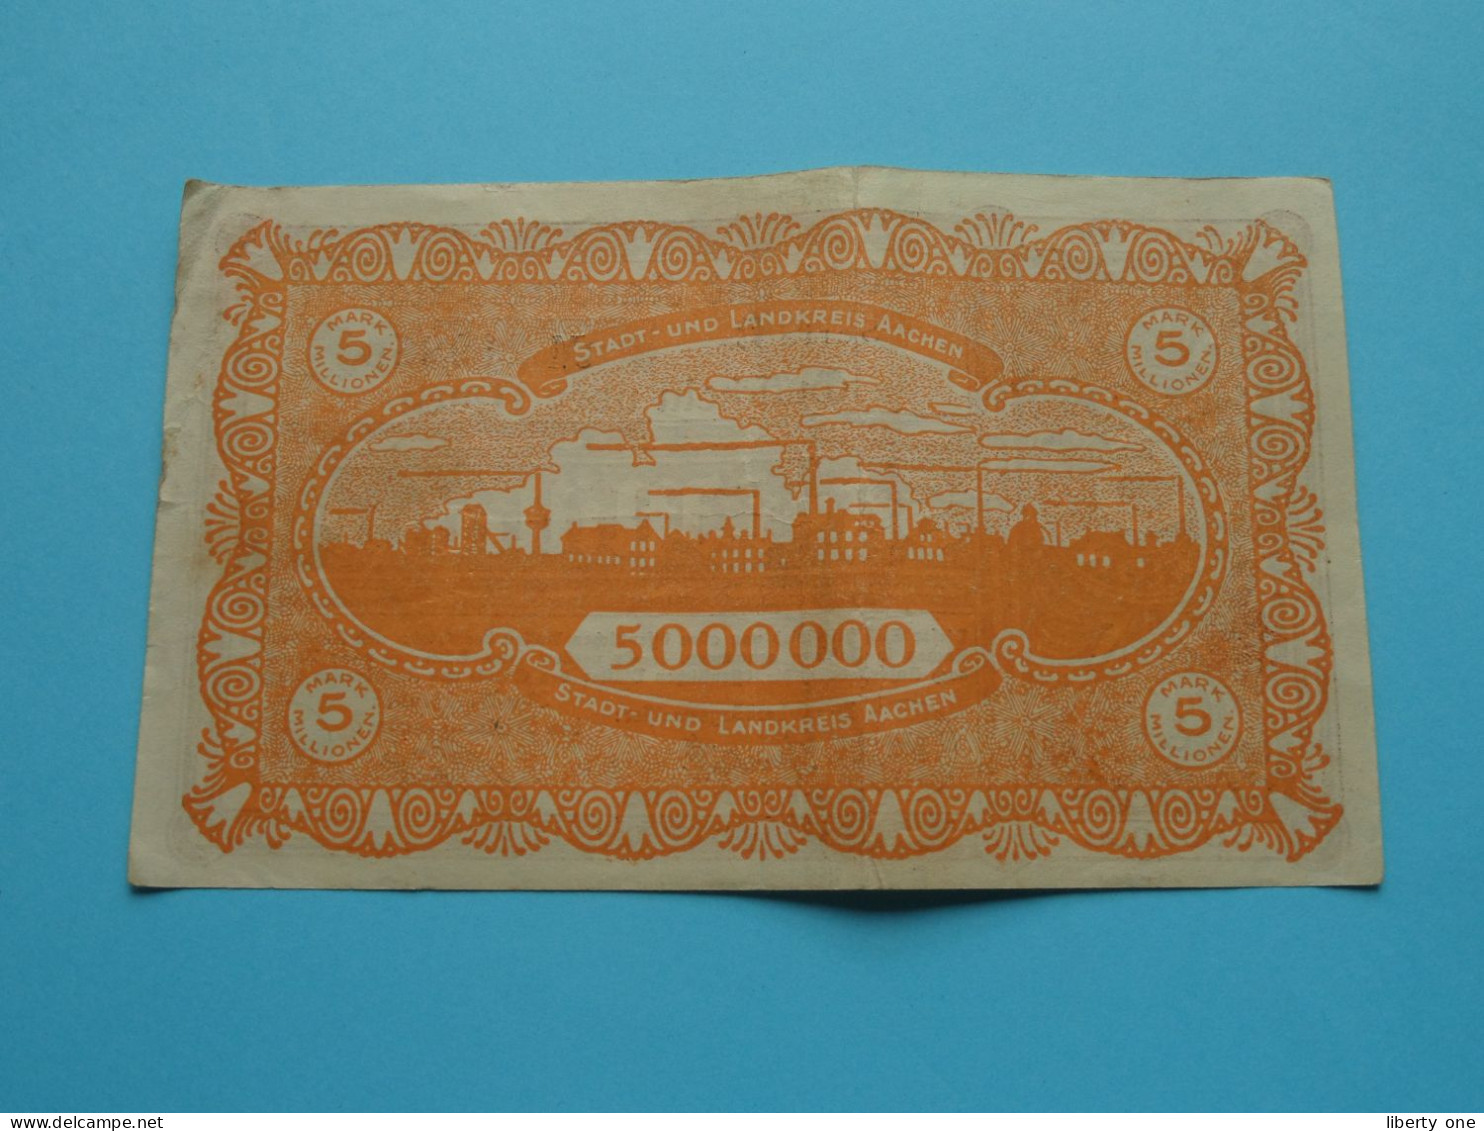 1922 / 1923 Reichsbanknote BERLIN Und AACHEN ( Voir / See > Scans ) Circuler > 7 Stück ! - Zu Identifizieren